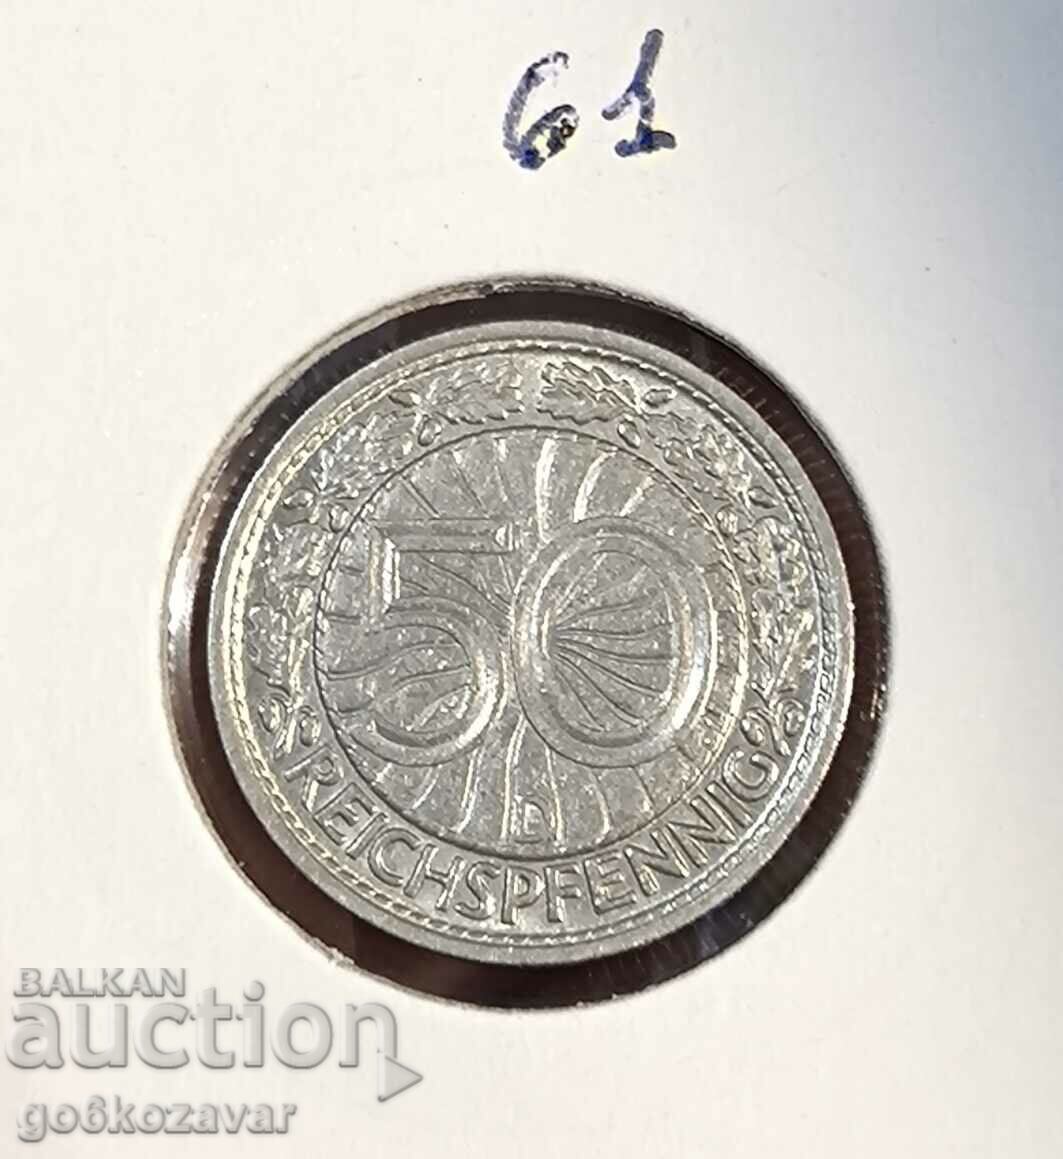 Germany 50 Reichspfennig 1928 D